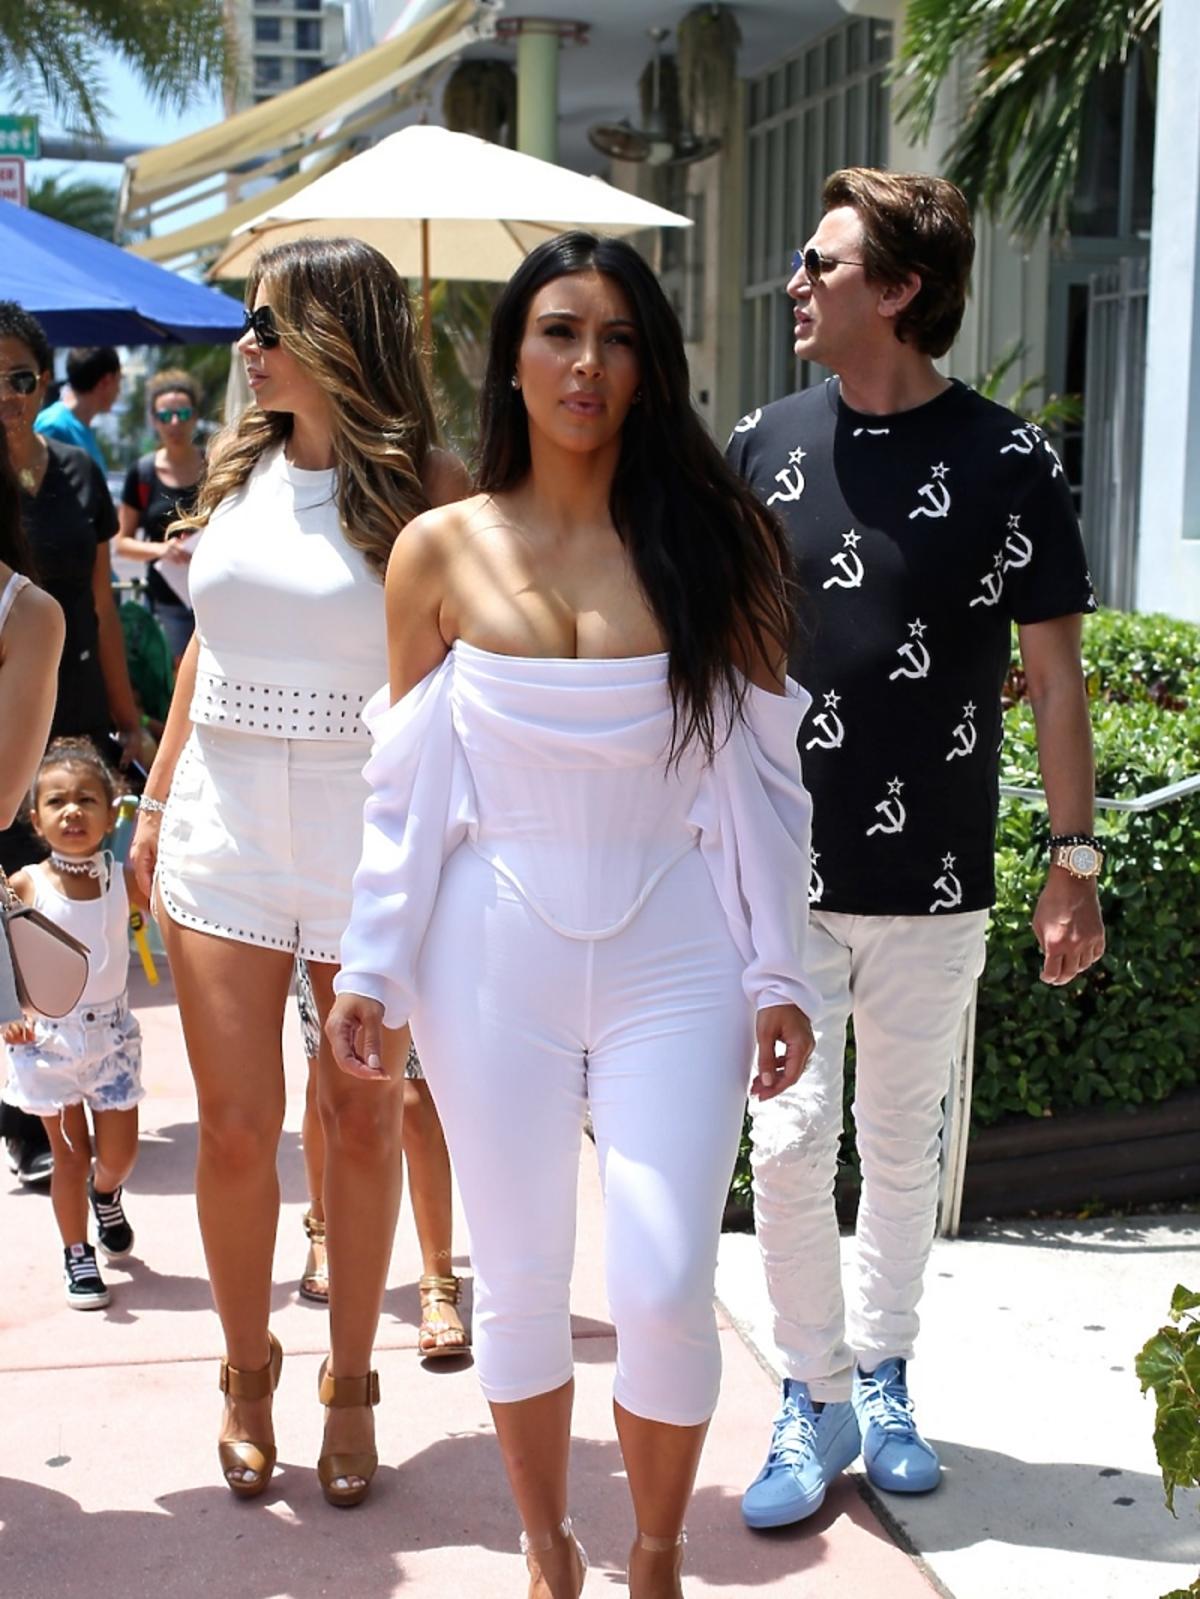 Biała stylizacja Kim Kardashian z za małą bluzką, ledwie mieszczącą obfity biust